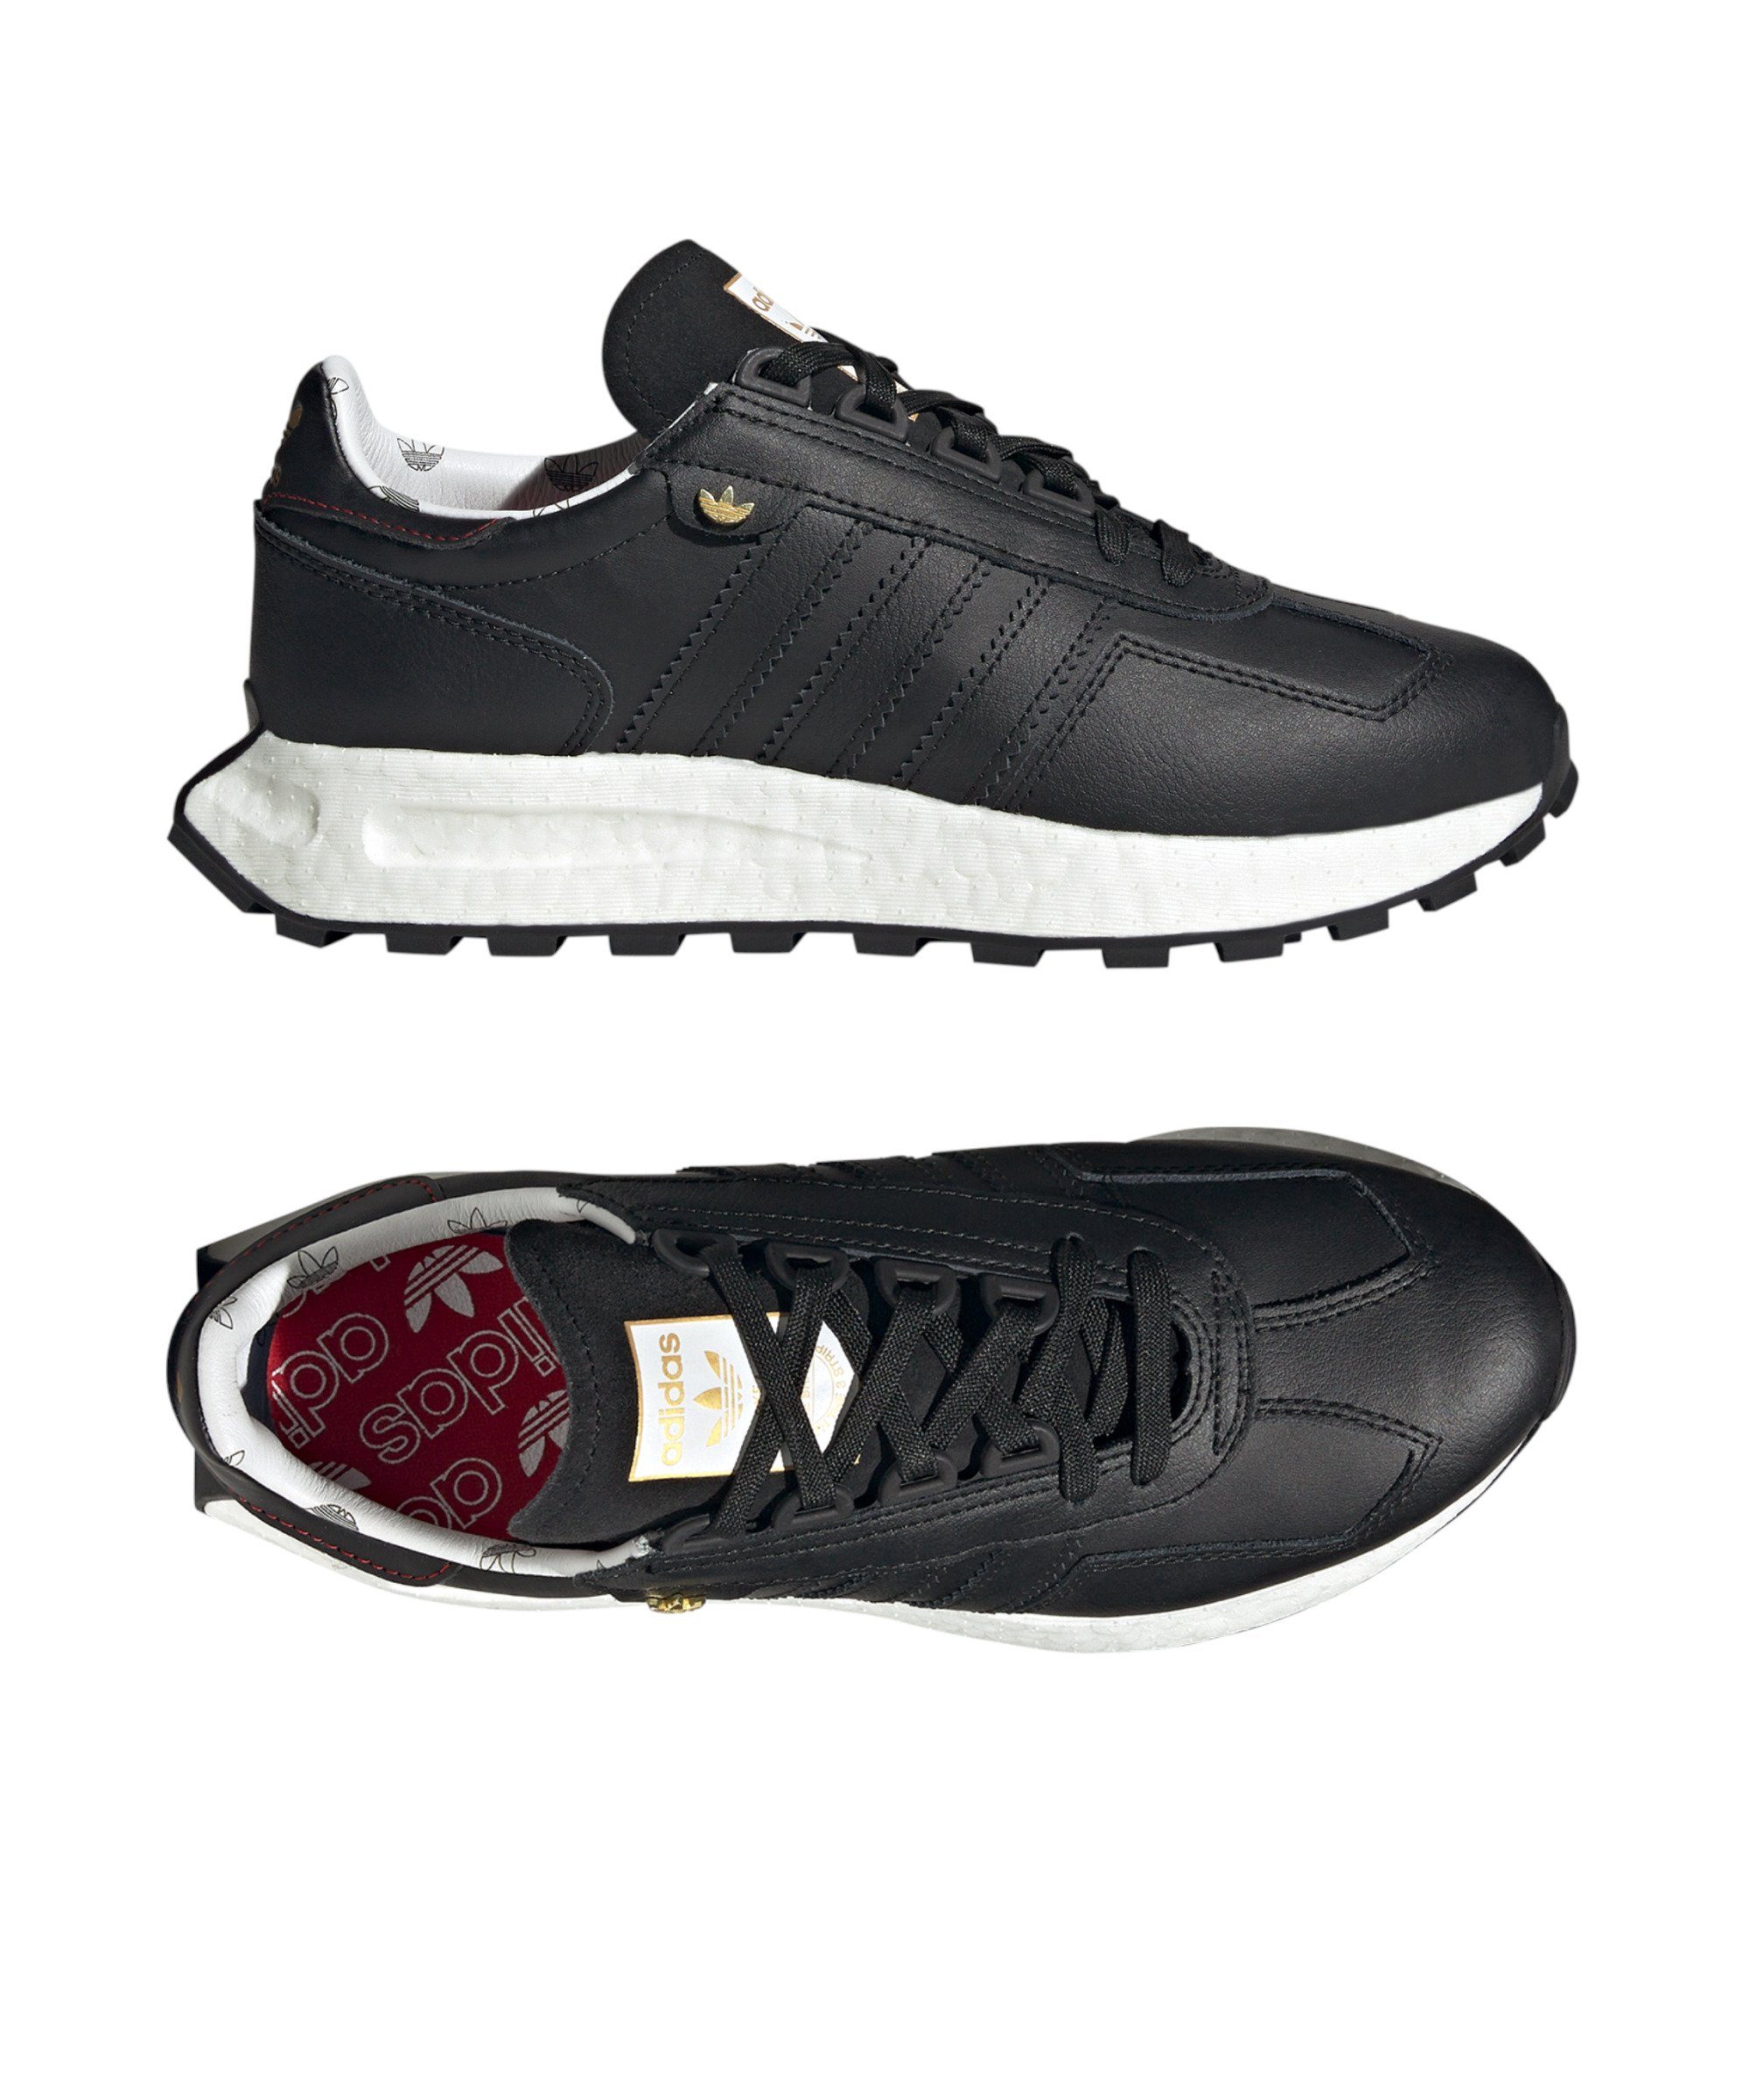 Retropy Sneaker E5 adidas Originals Damen